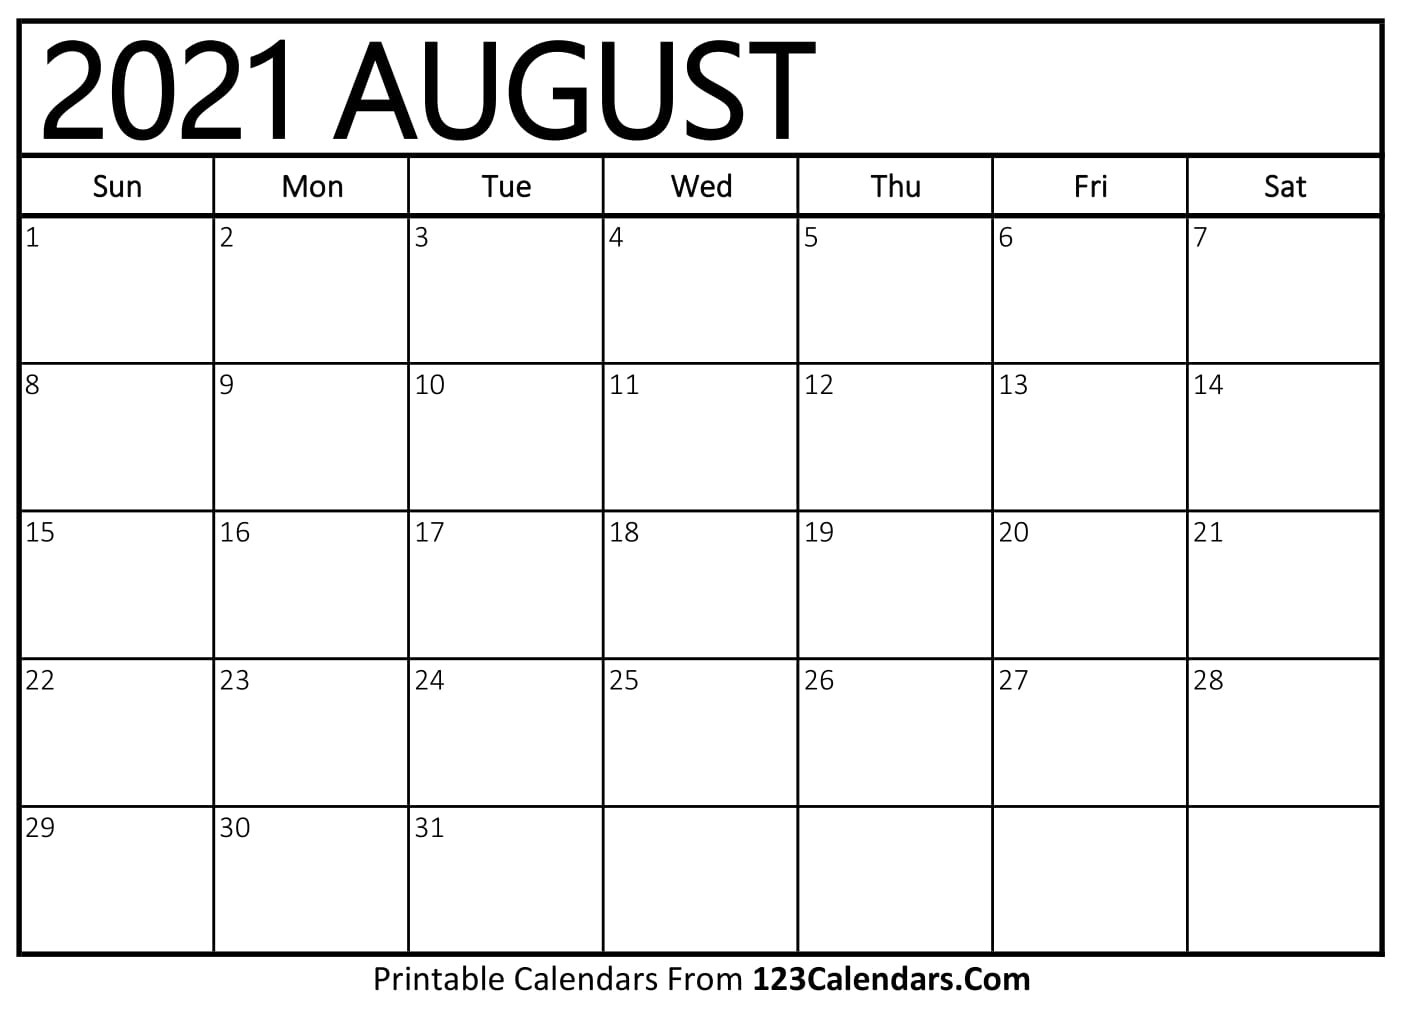 Printable August 2021 Calendar Templates - 123Calendars-Hourly Aug 2021 Calendar